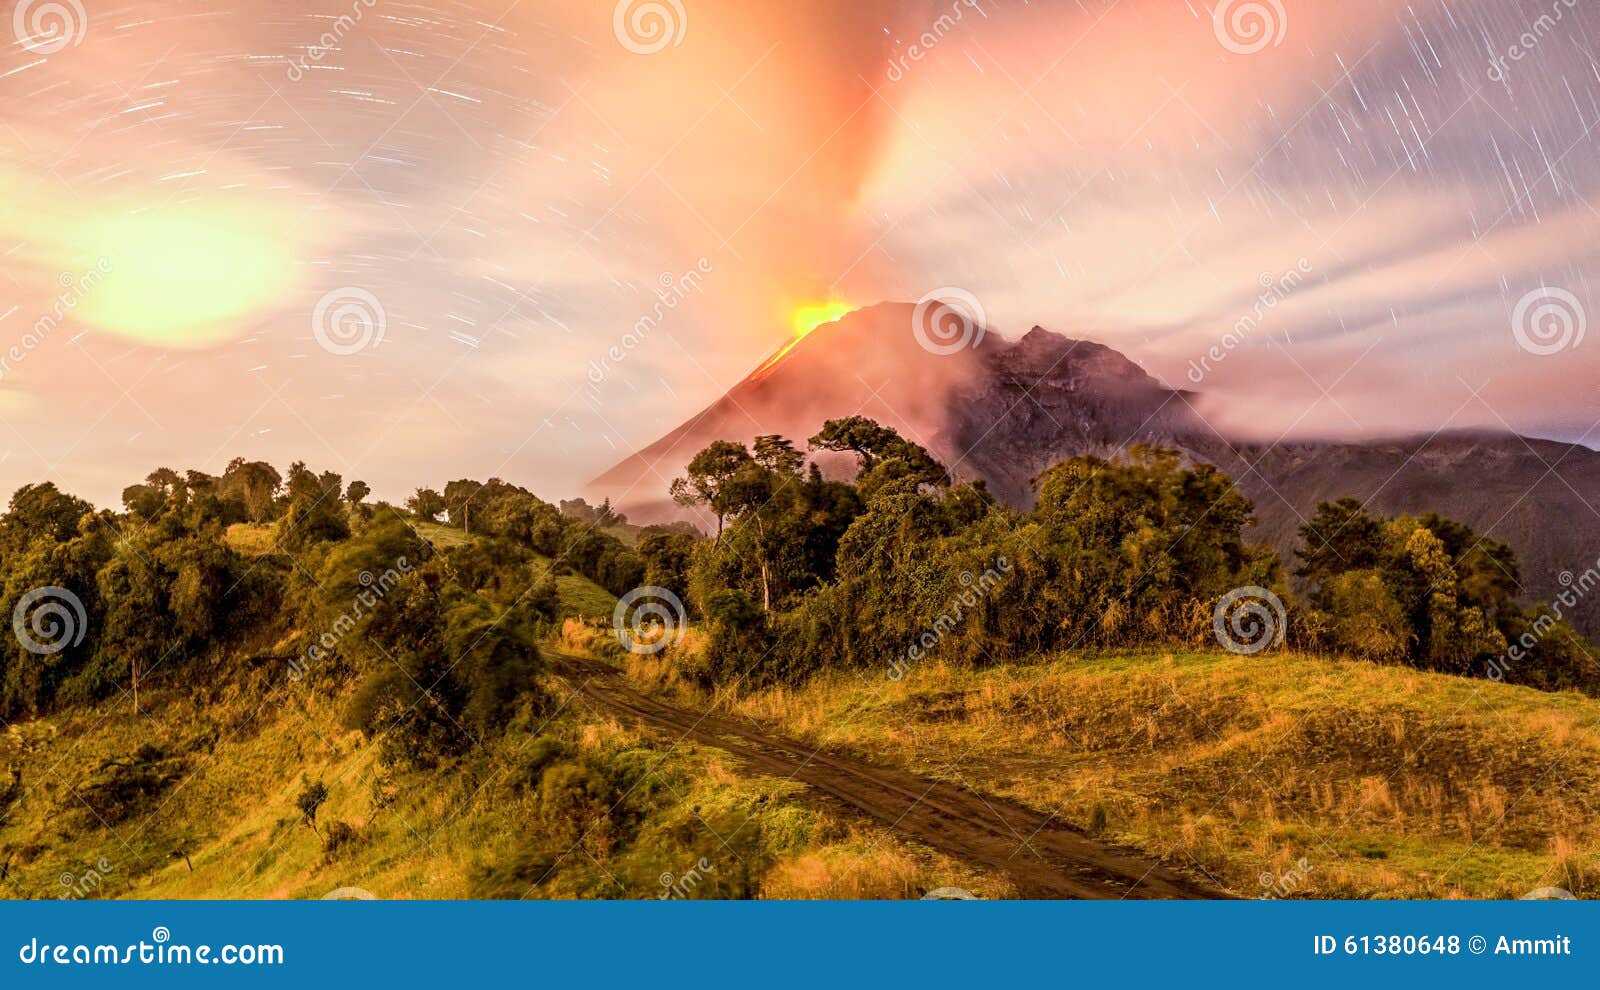 tungurahua volcano erupting long exposure